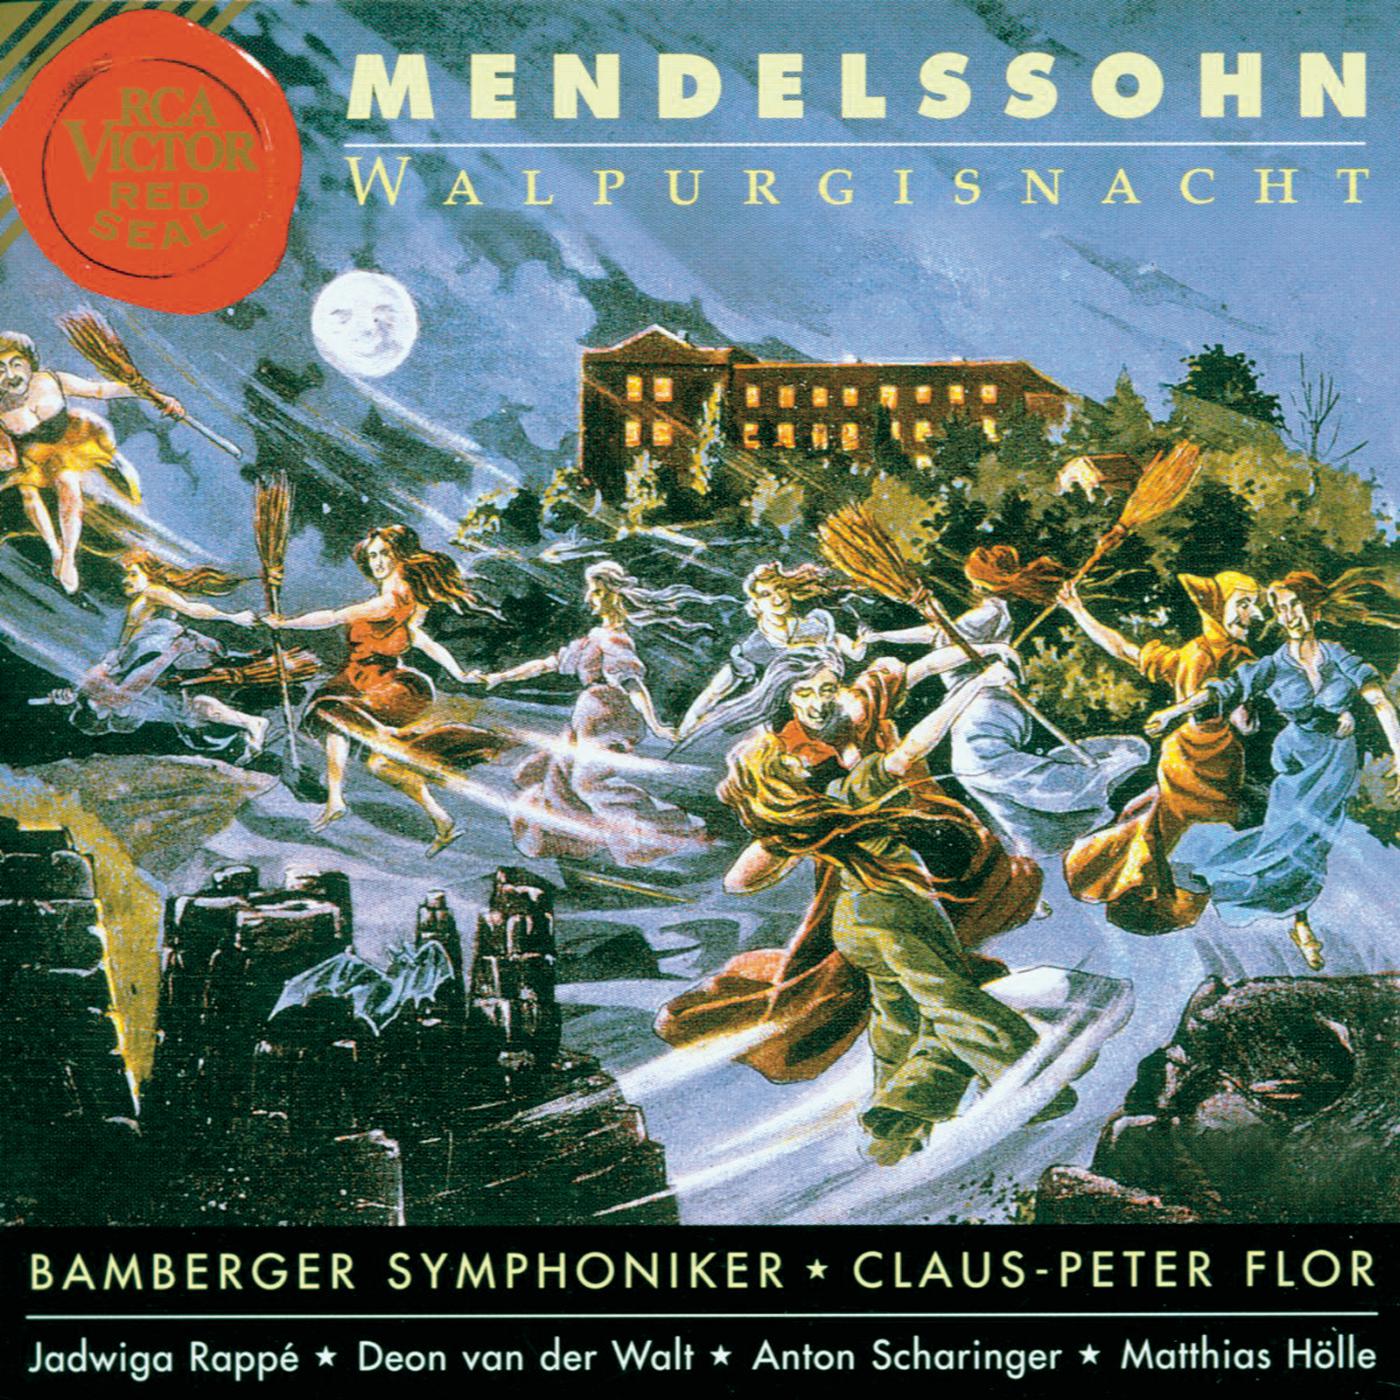 Leise zieht durch mein Gemü th, 12 Lieder von Mendelssohn, Arr. for Orchestra by Siegfried Matthus: Pagenlied, WoO 17, No. 2: " Wenn die Sonne lieblich schiene"